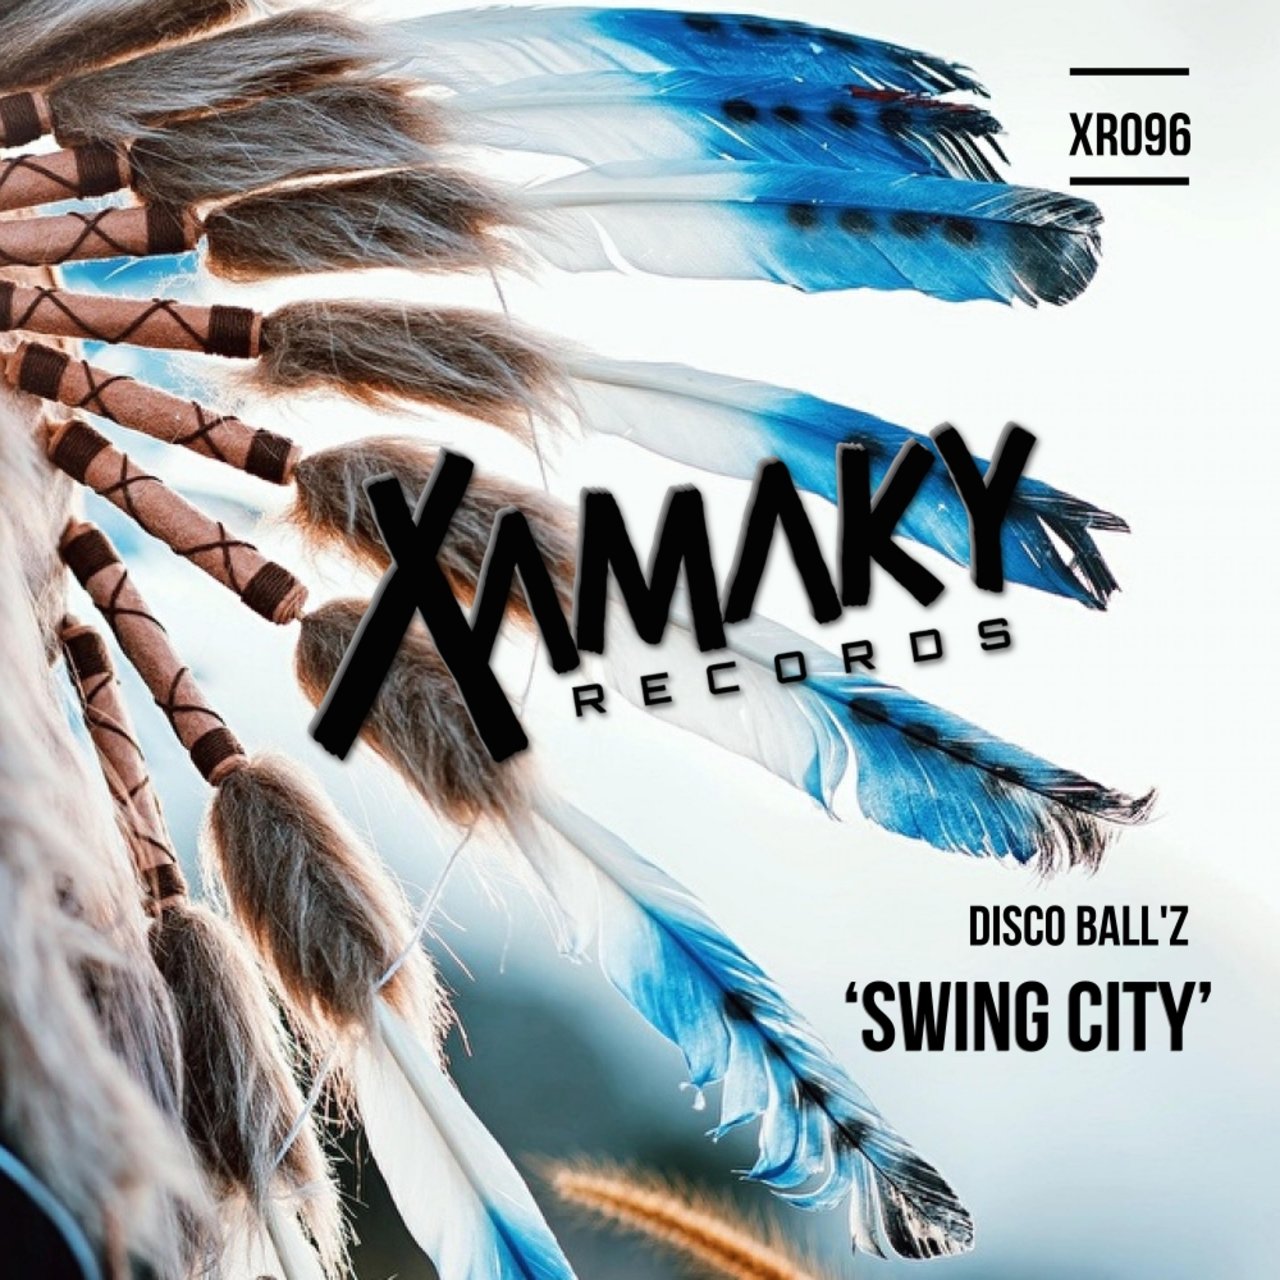 Disco Ball'z - Swing City / Xamaky Records